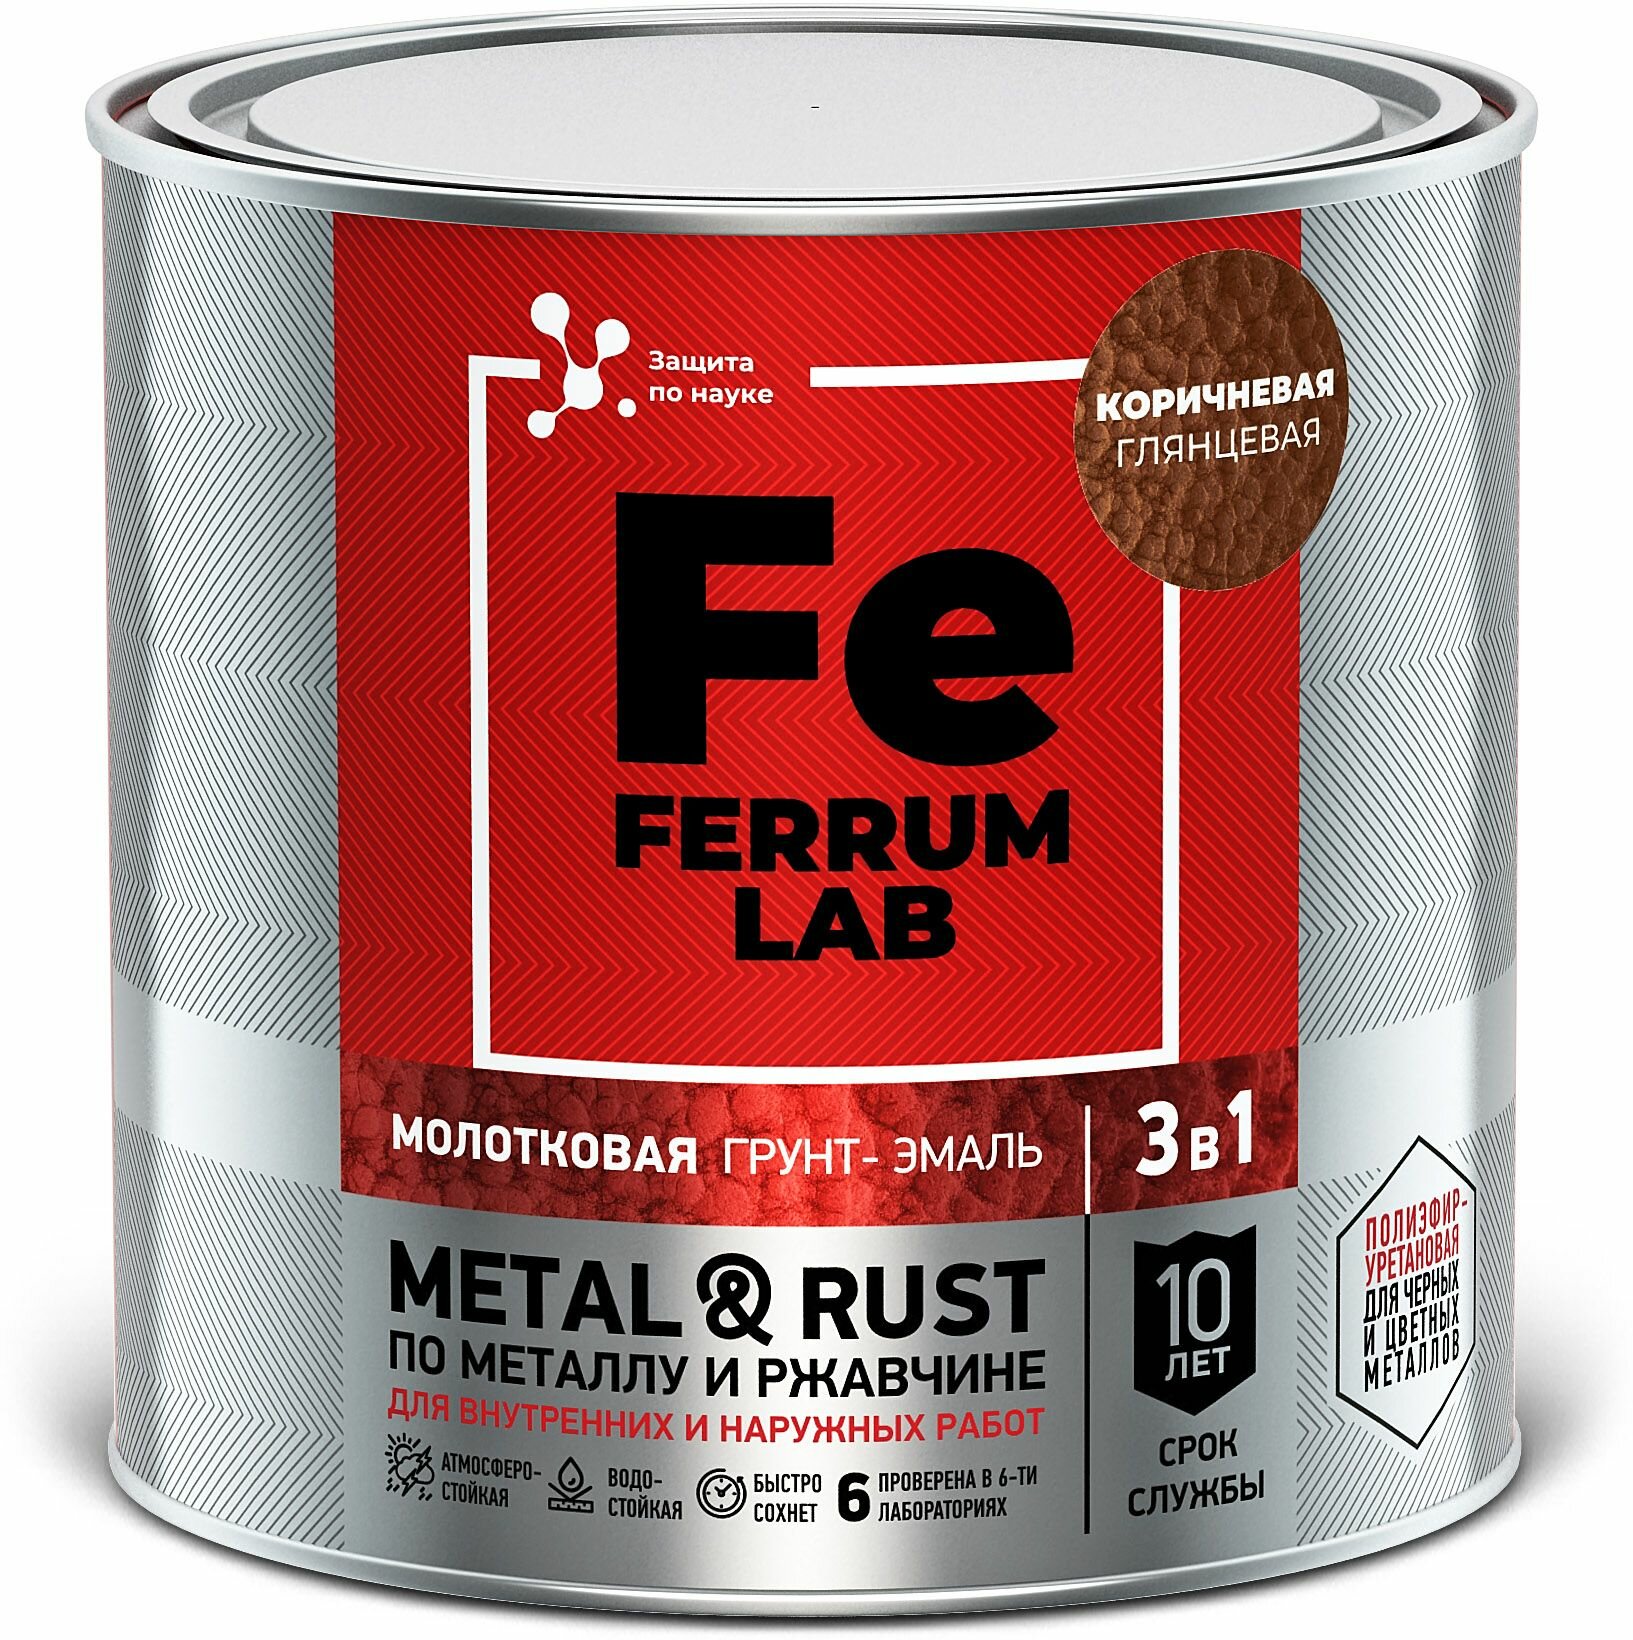 Грунт-эмаль FERRUM LAB по ржавчине 3 в 1 молотковая коричневая, банка 0,75 л